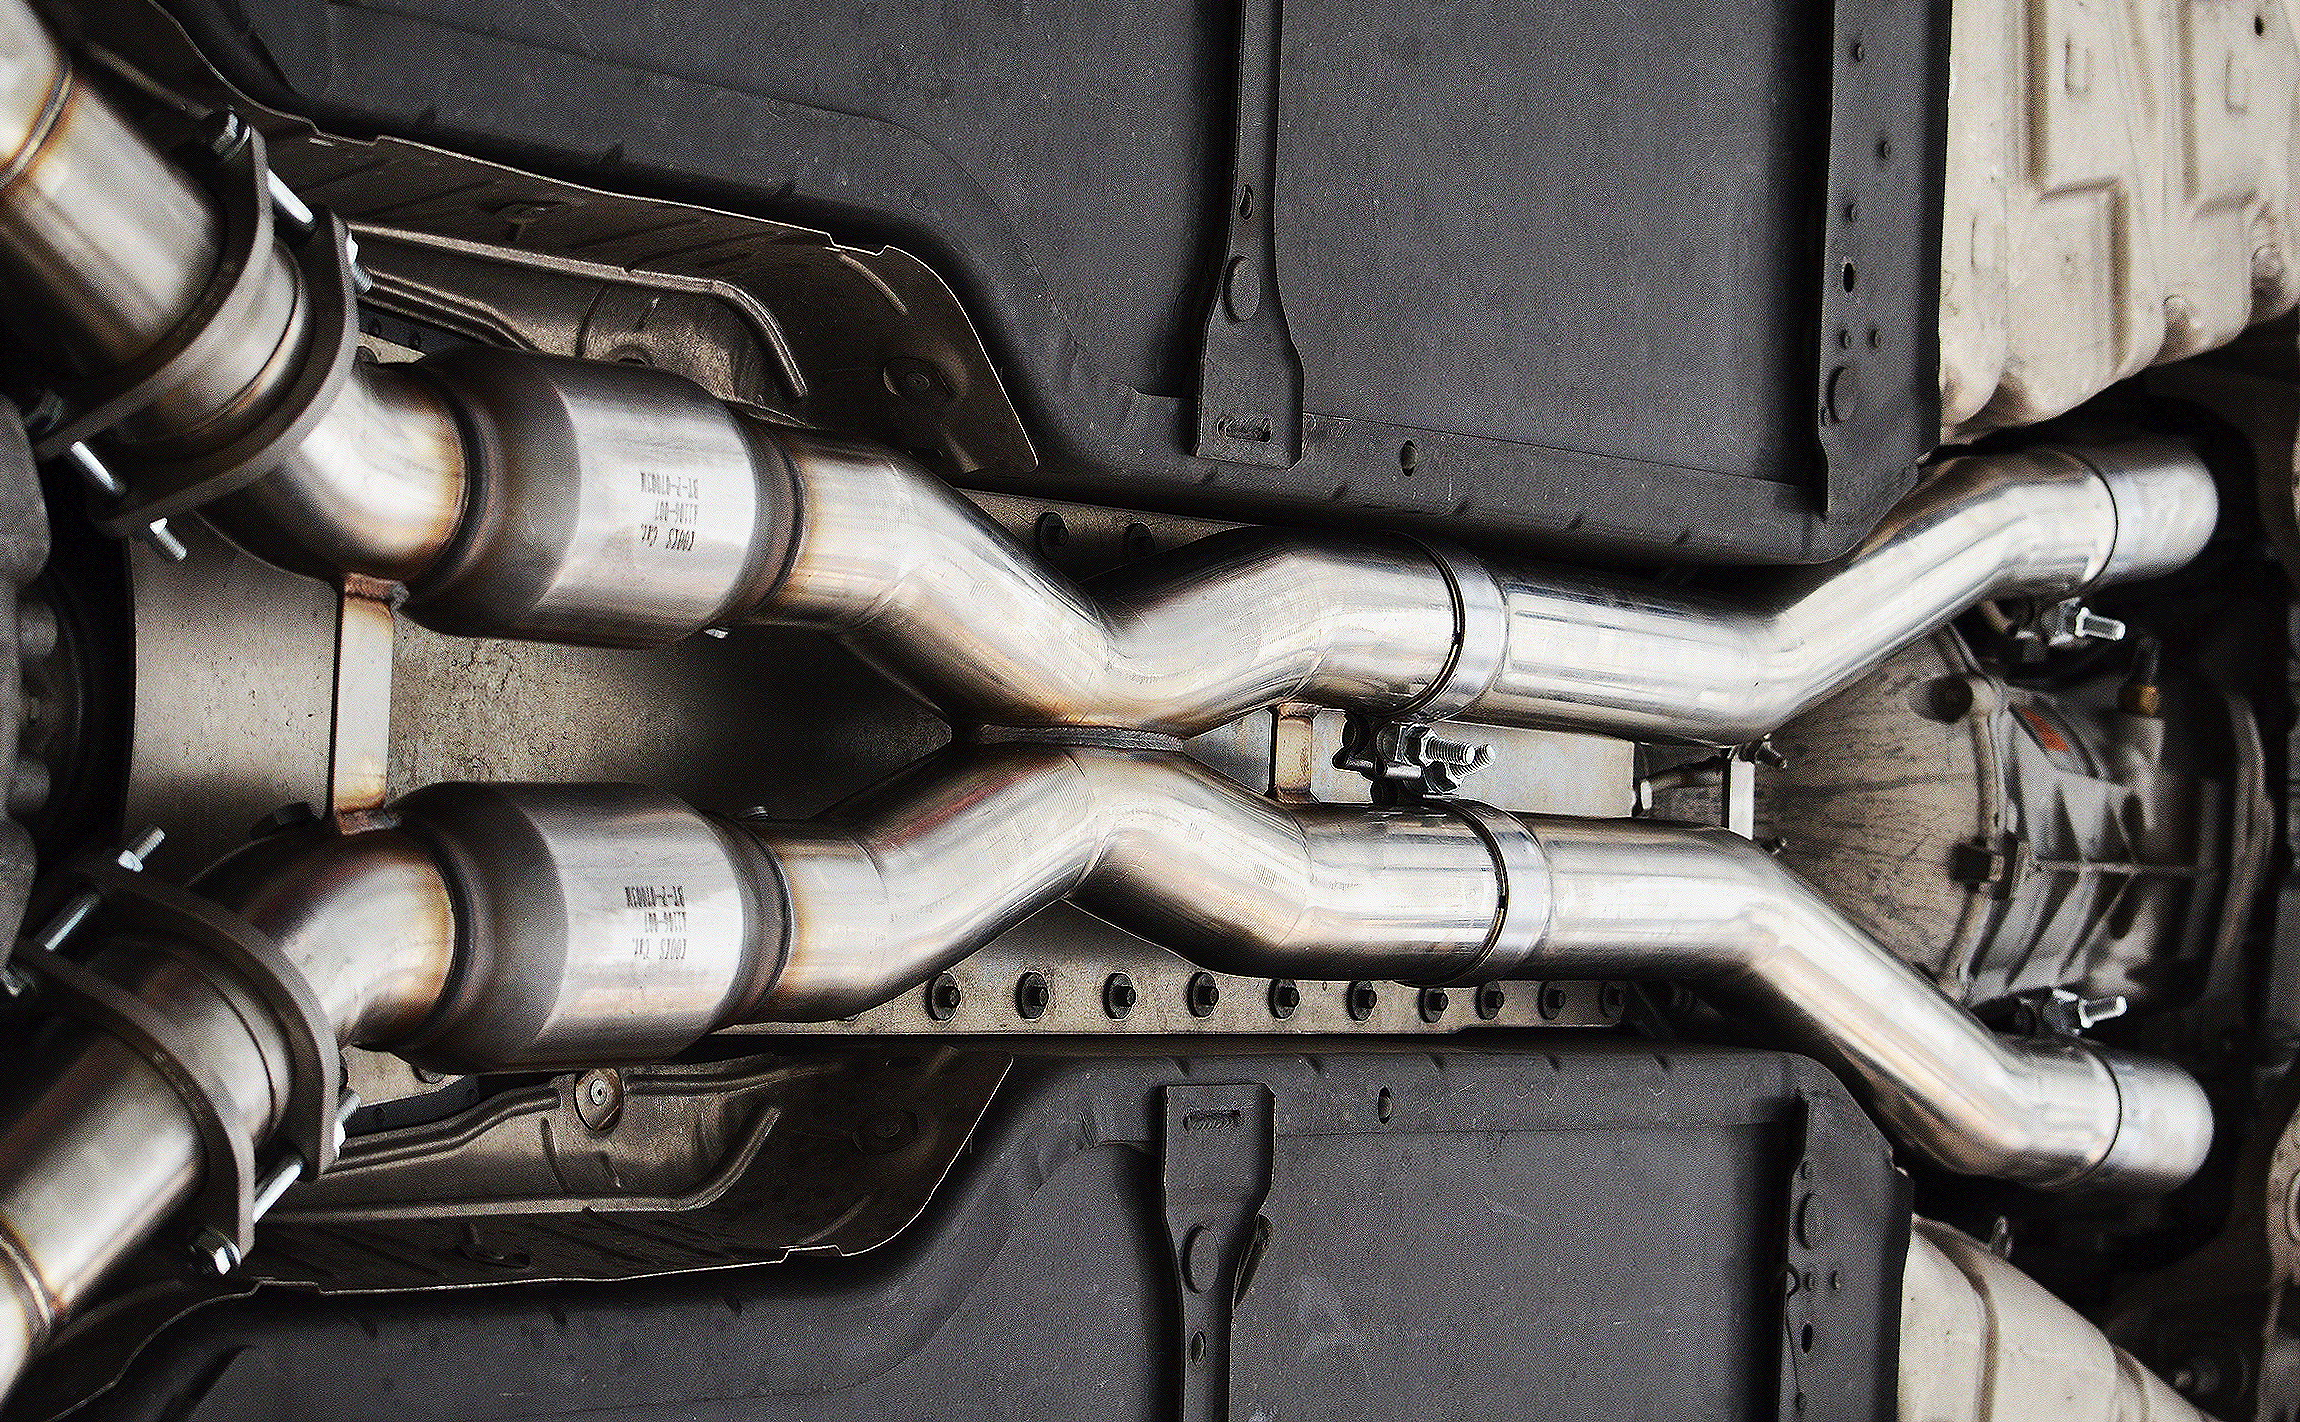 Kooks X-pipe in Corvette Z06